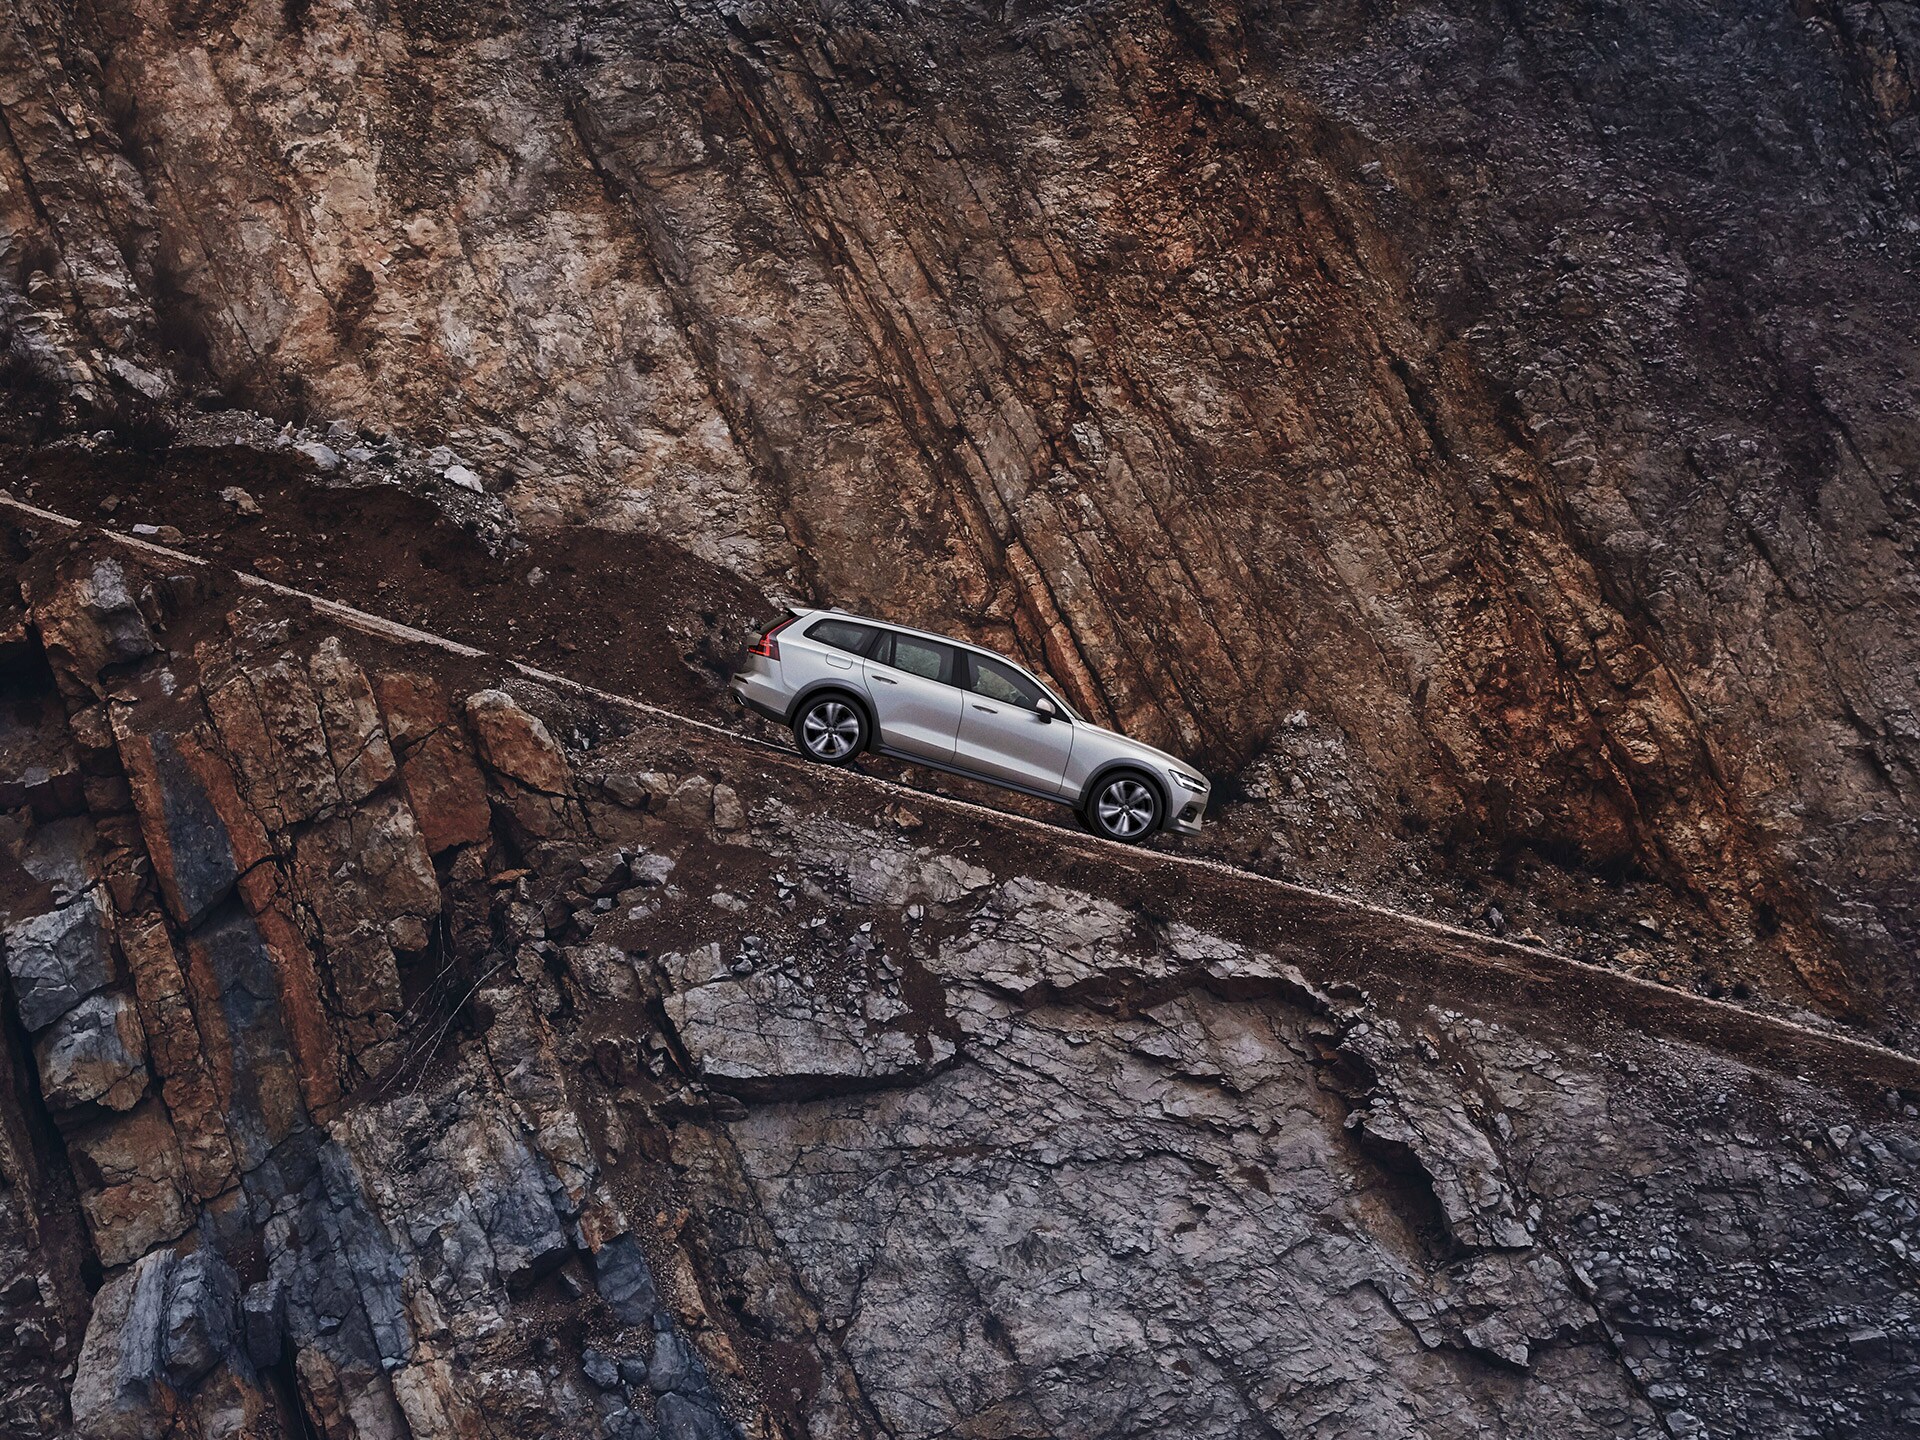 Volvo V60 Cross Country gris clair descendant une côte à flanc de falaise en pierre rouge